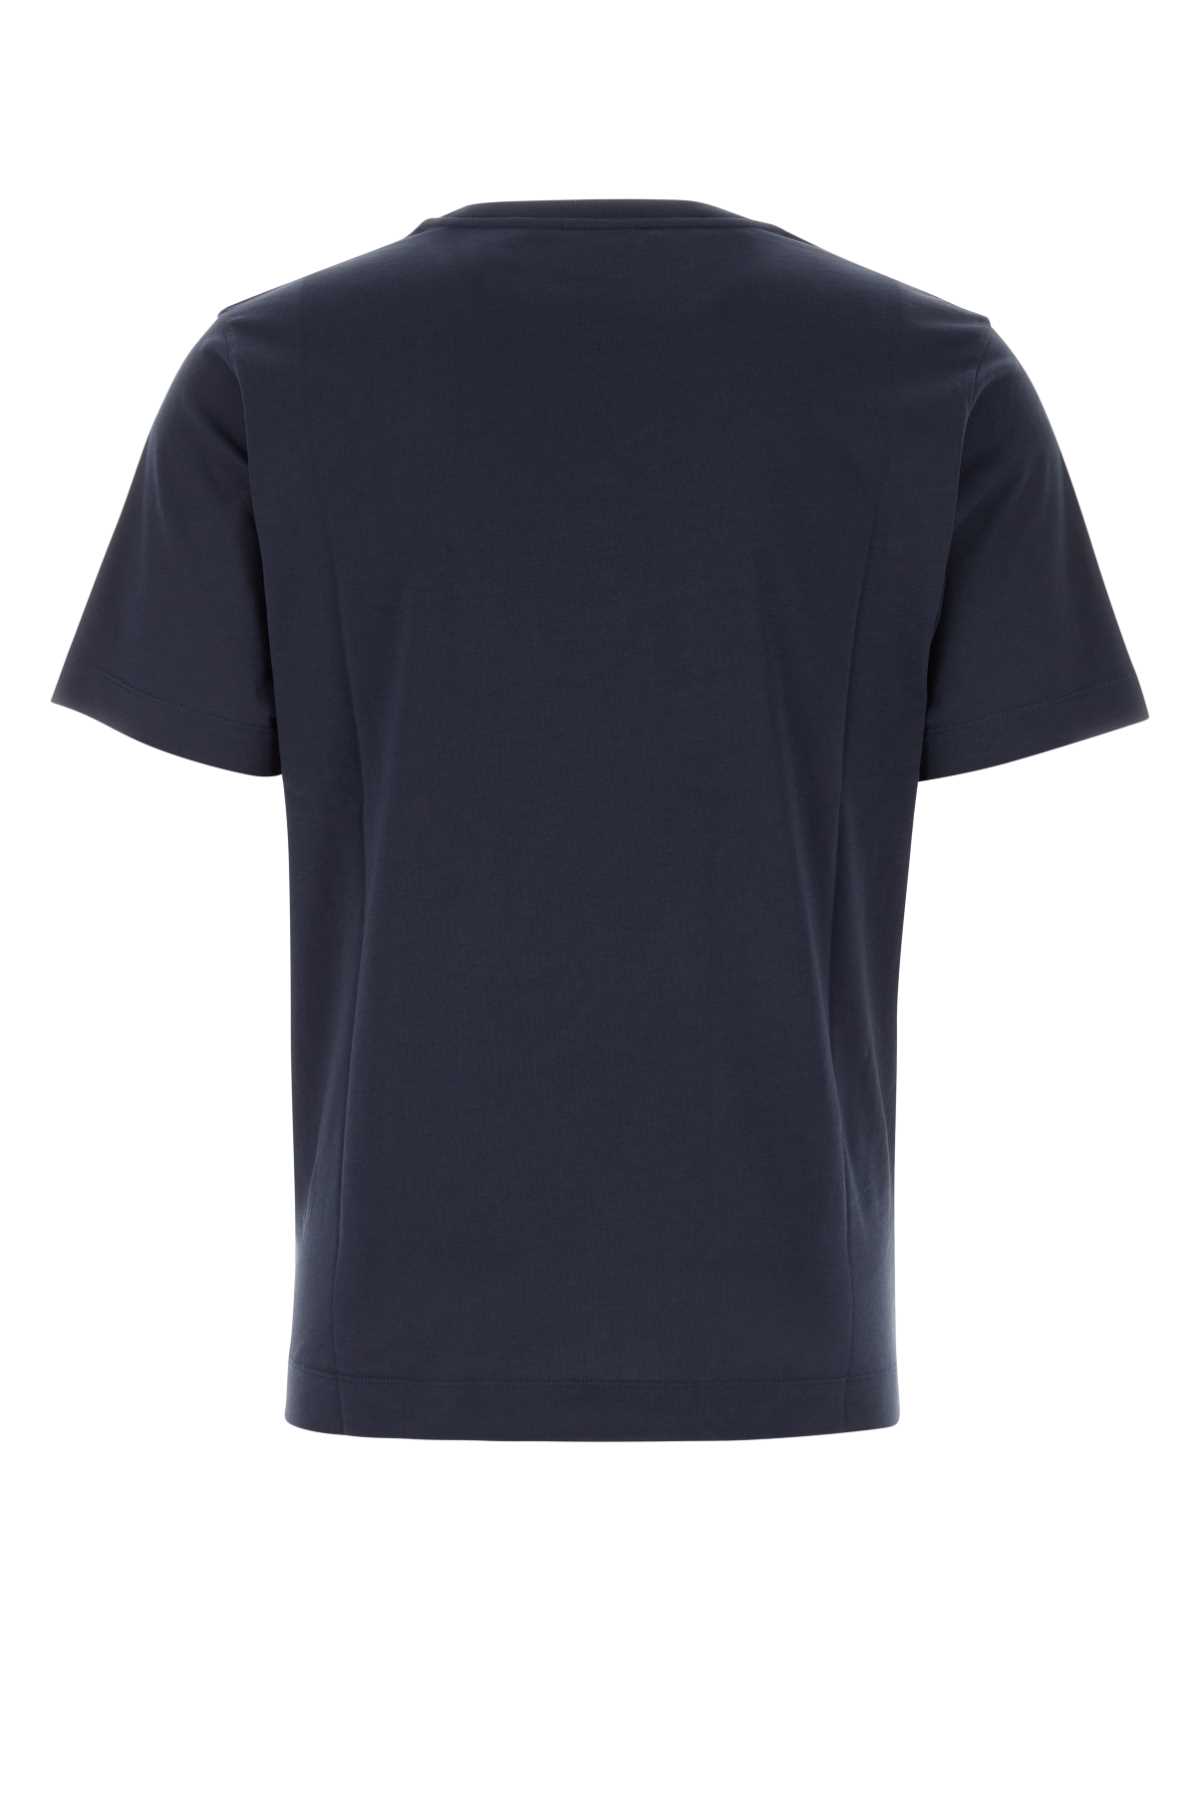 Dries Van Noten Midnight Blue Cotton T-shirt In Navy